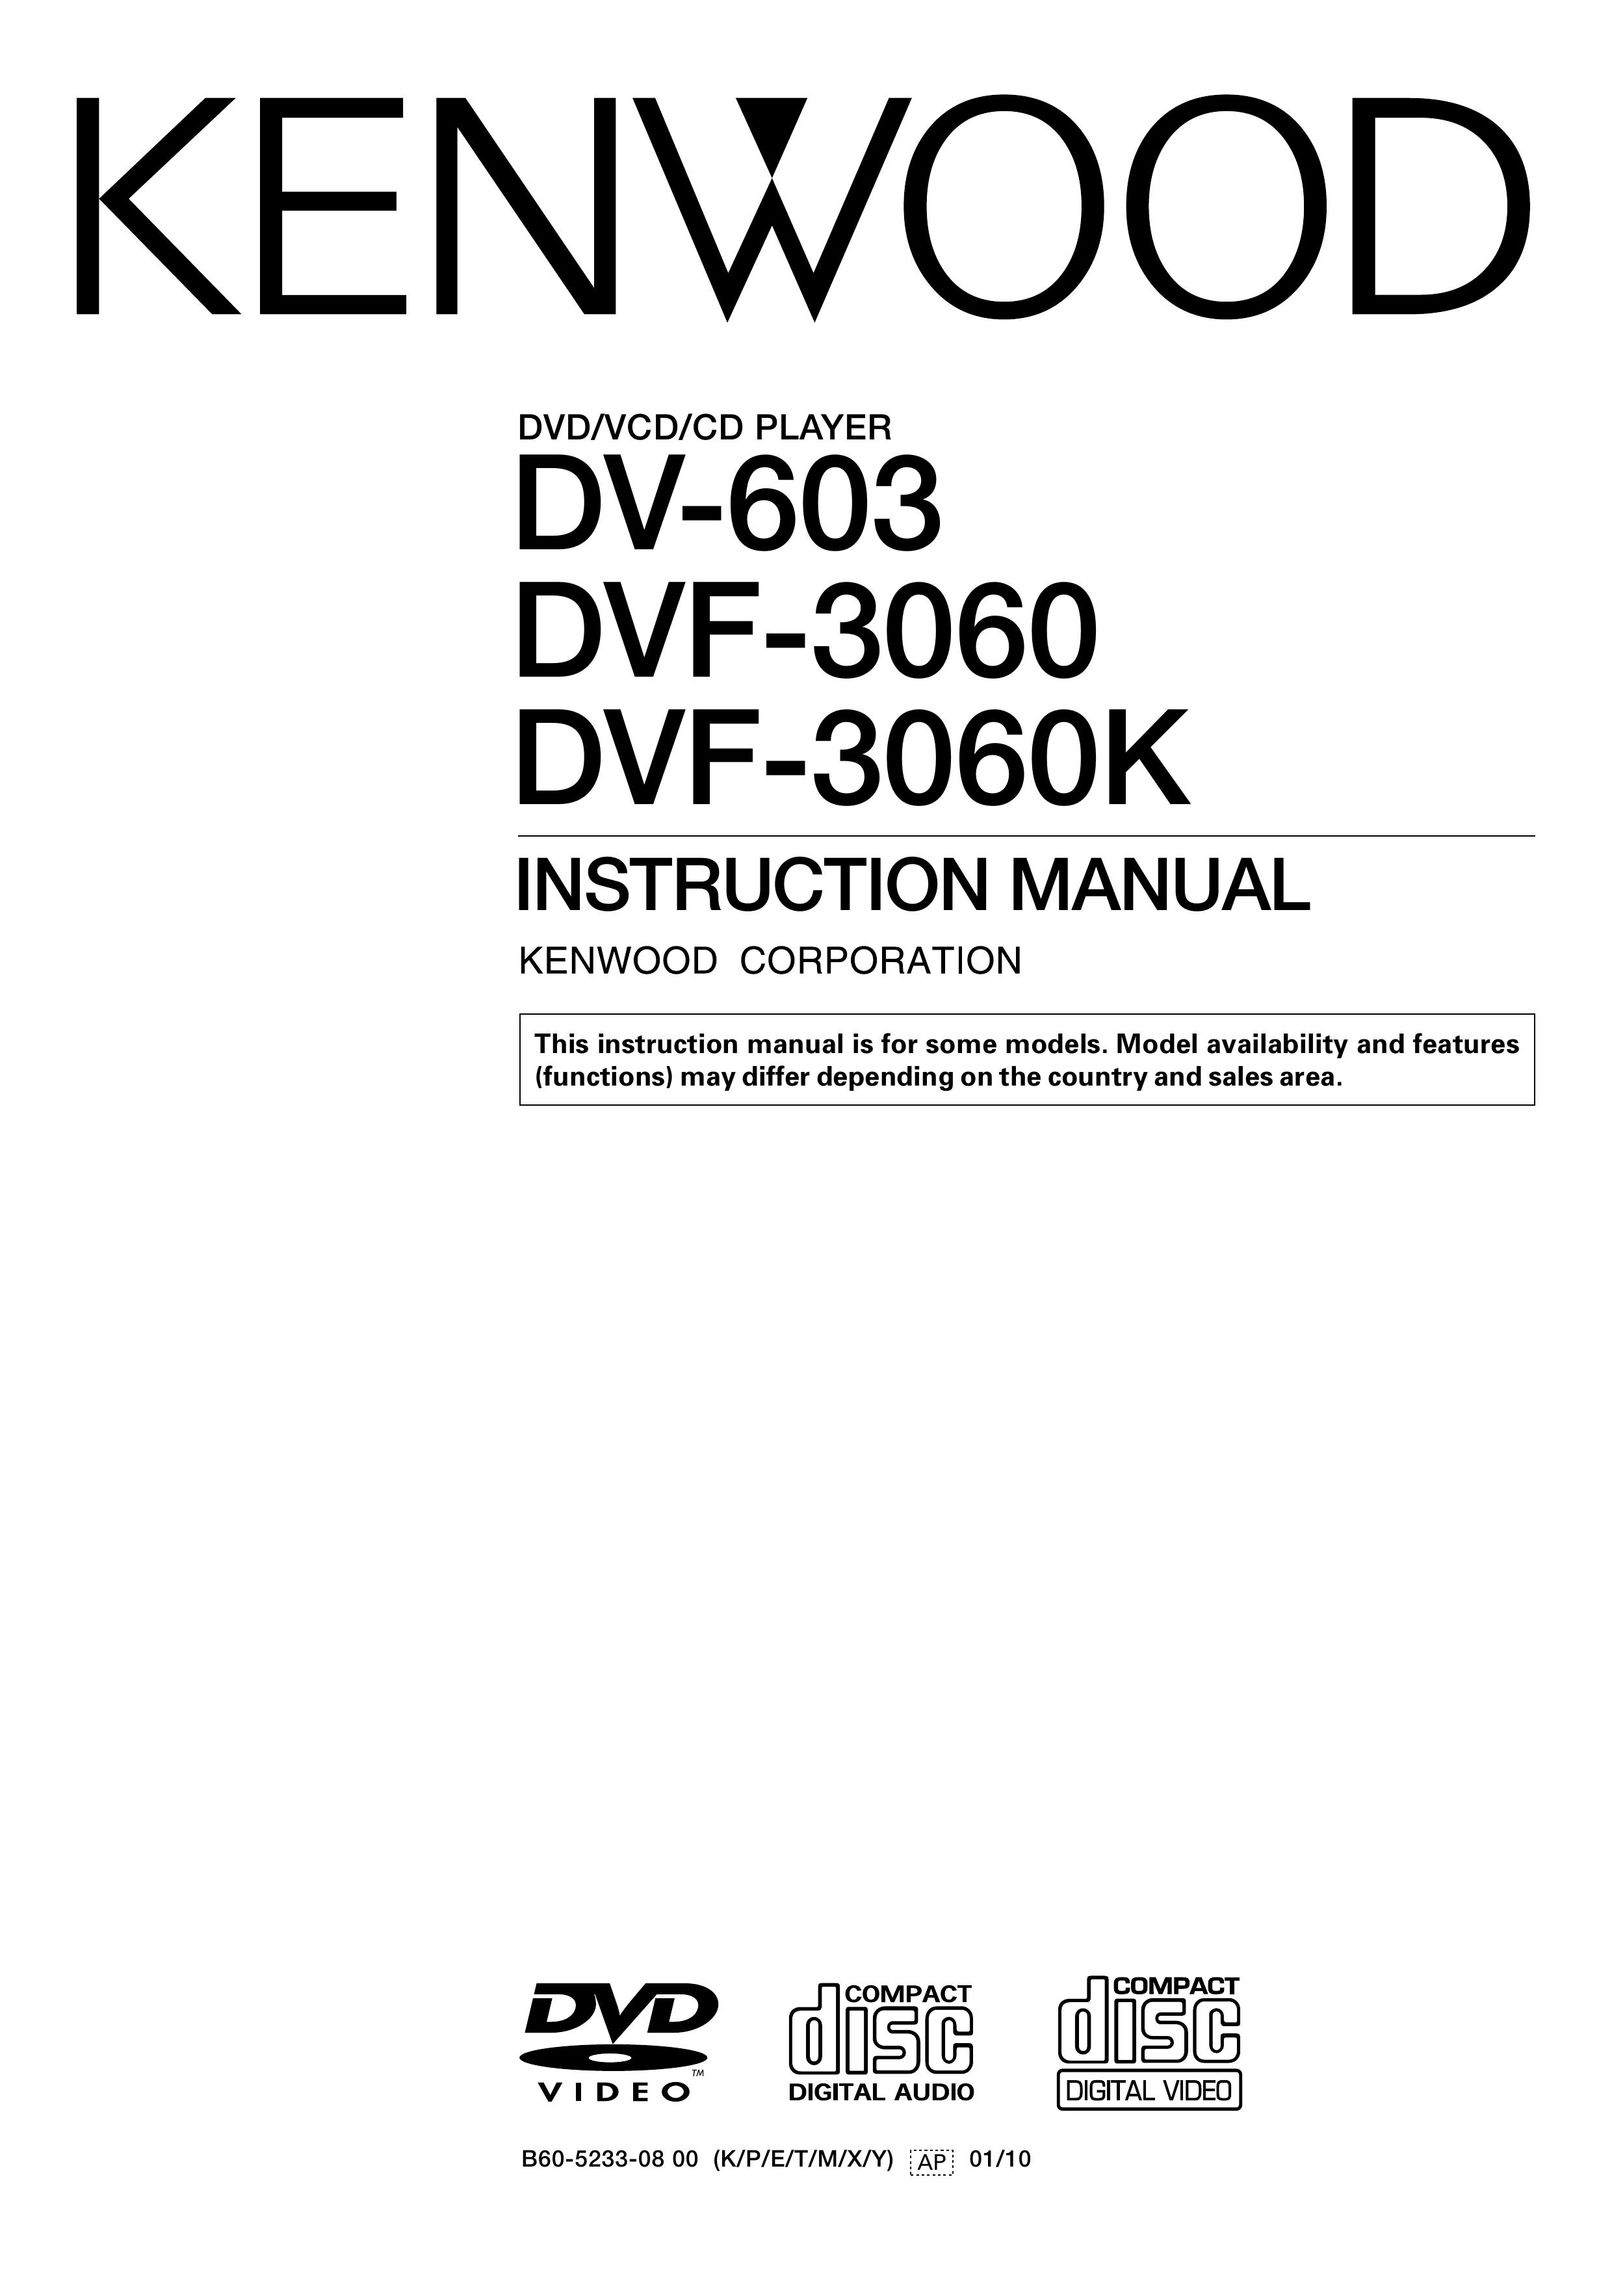 Kenwood DVF-3060K DVD Player User Manual